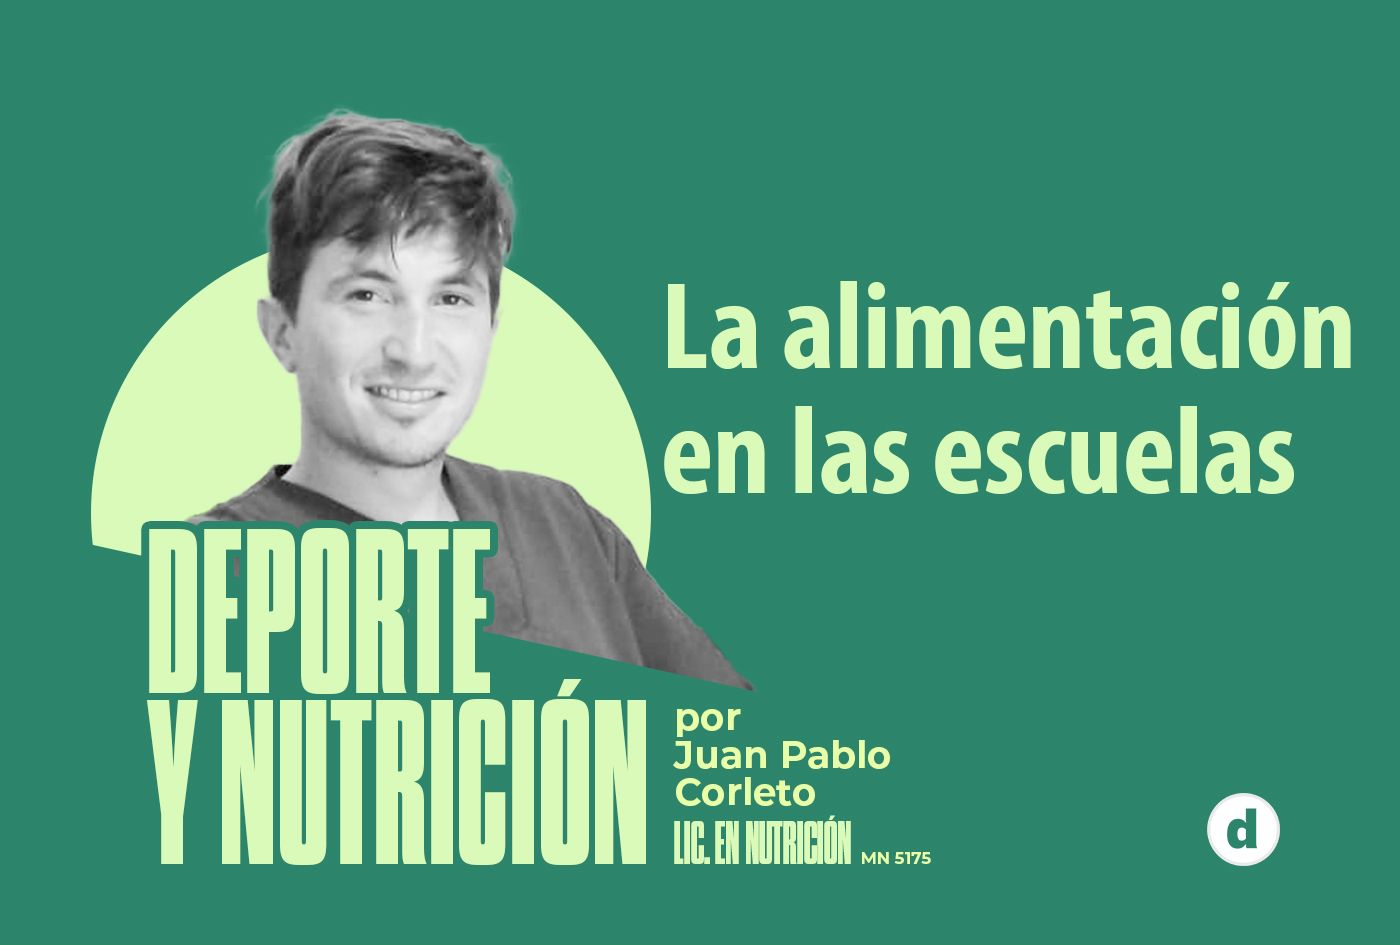 La columna del nutricionista Juan Pablo Corleto: “La alimentación en las escuelas”